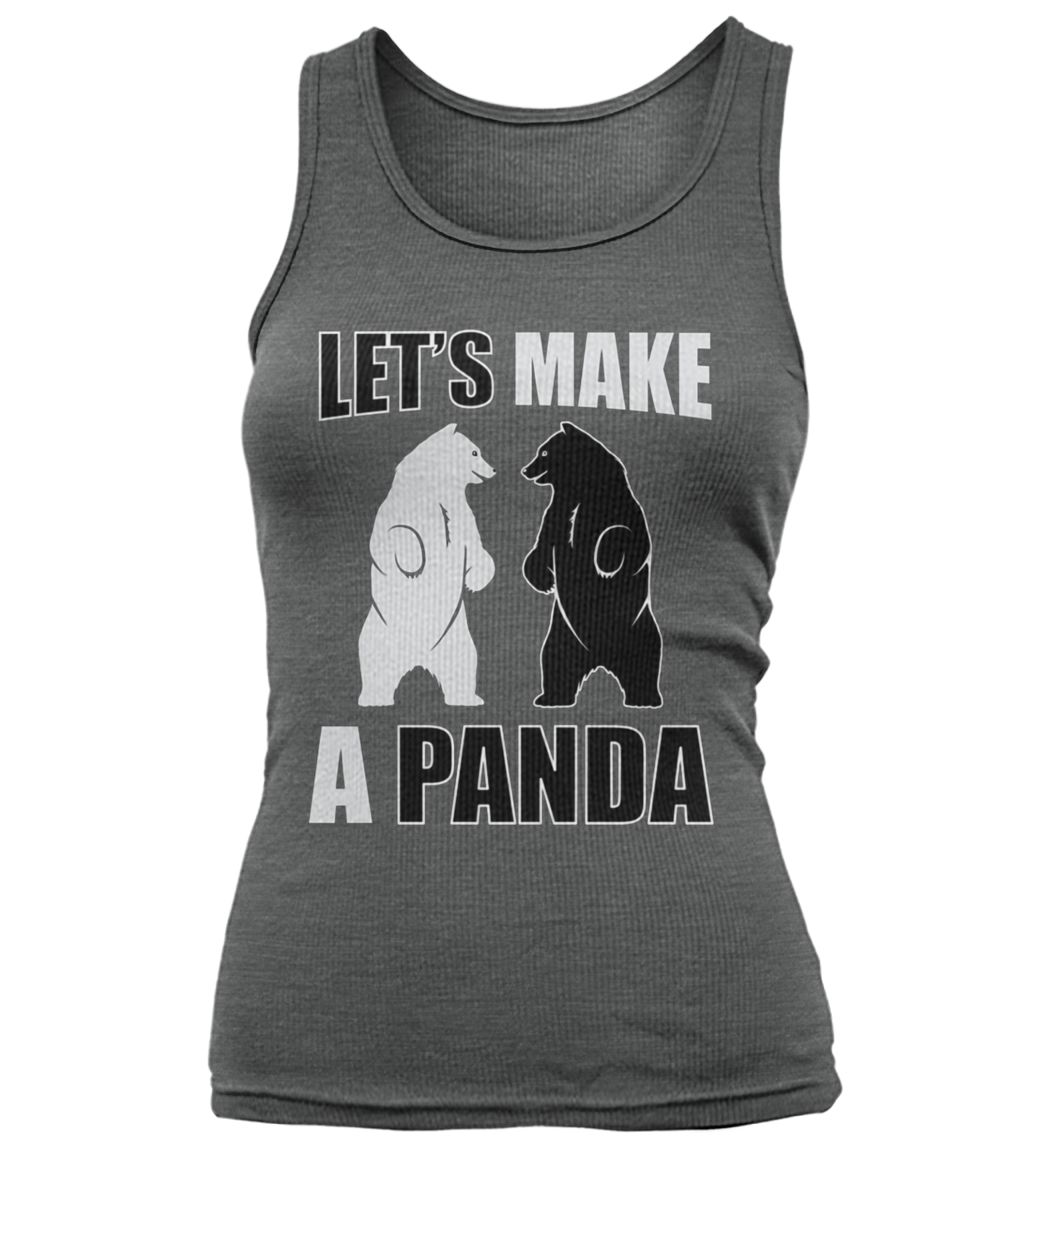 Let's make a panda women's tank top